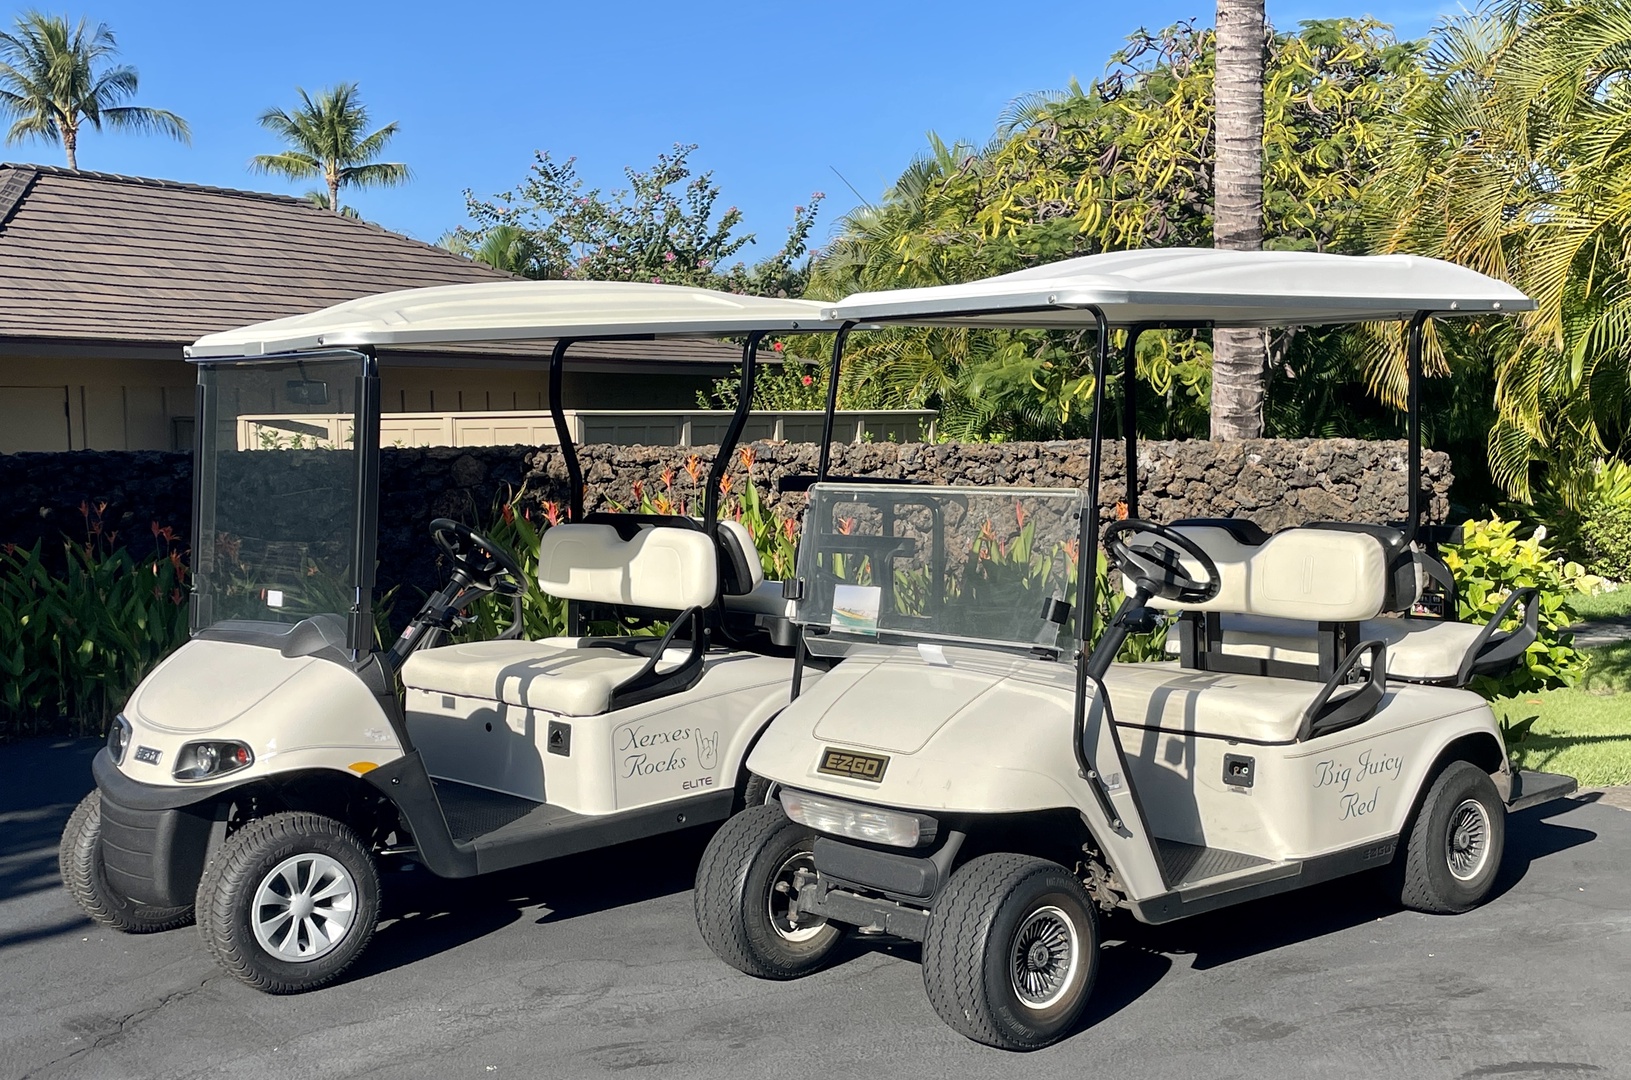 Kailua Kona Vacation Rentals, 3BD Ke Alaula Villa (210B) at Four Seasons Resort at Hualalai - This rental comes with TWO 4-seater golf carts!